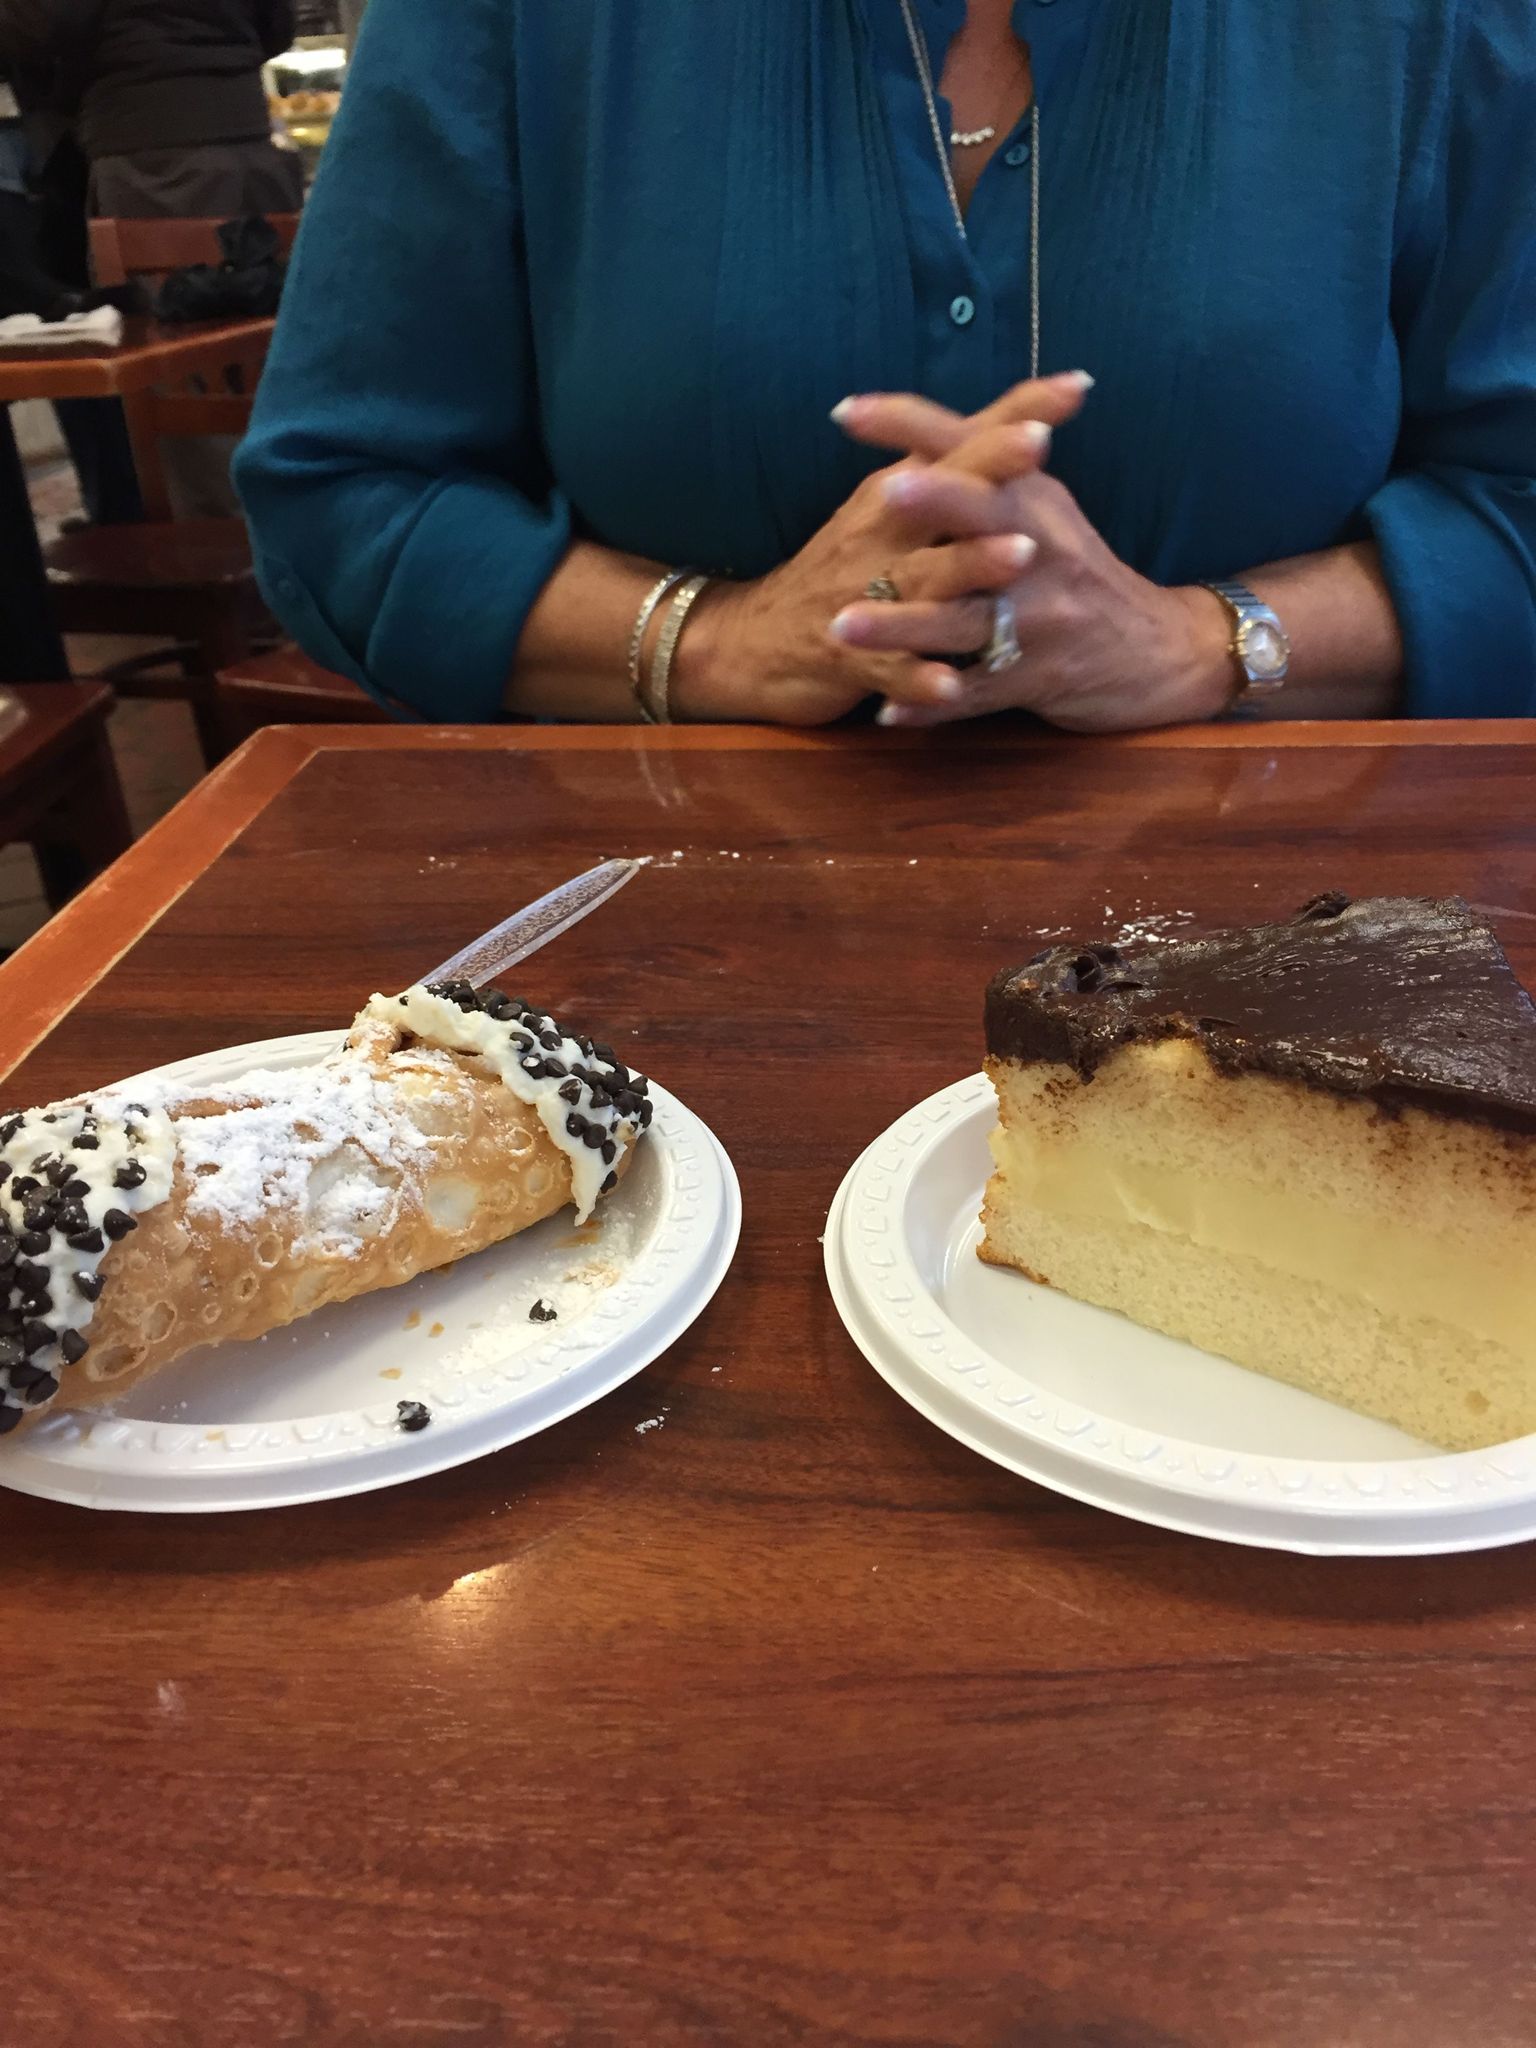 Cannoli and Boston cream pie